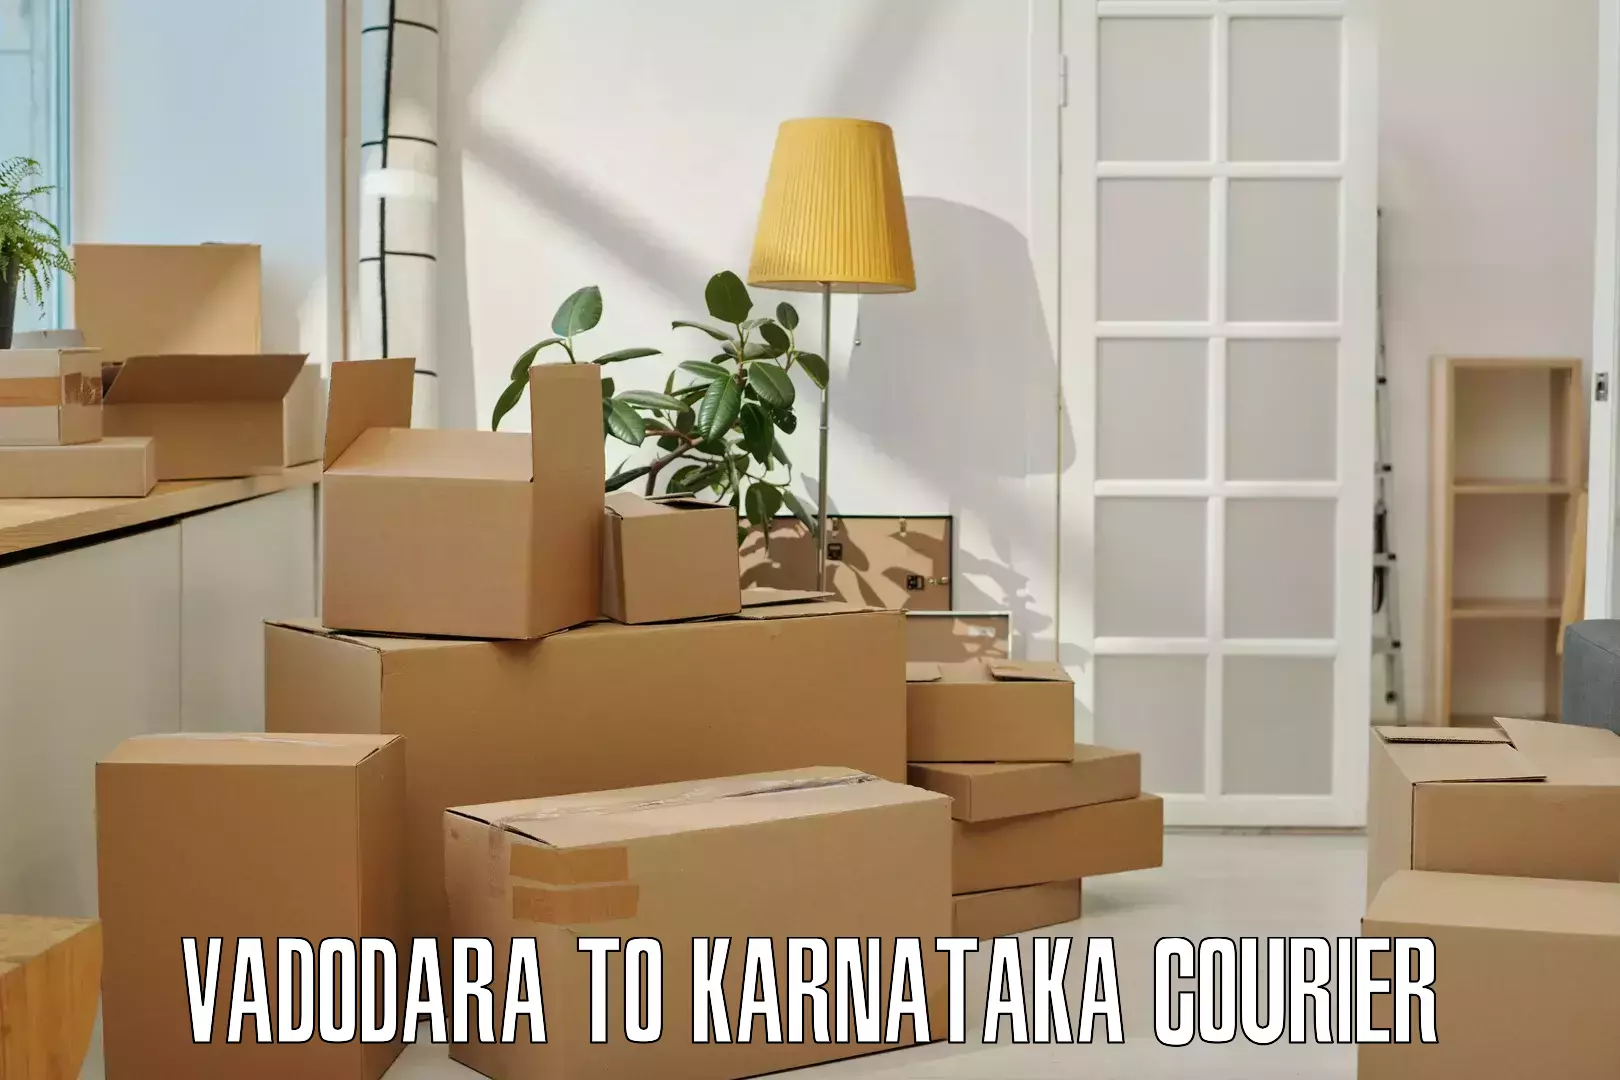 High-capacity shipping options Vadodara to Bangalore